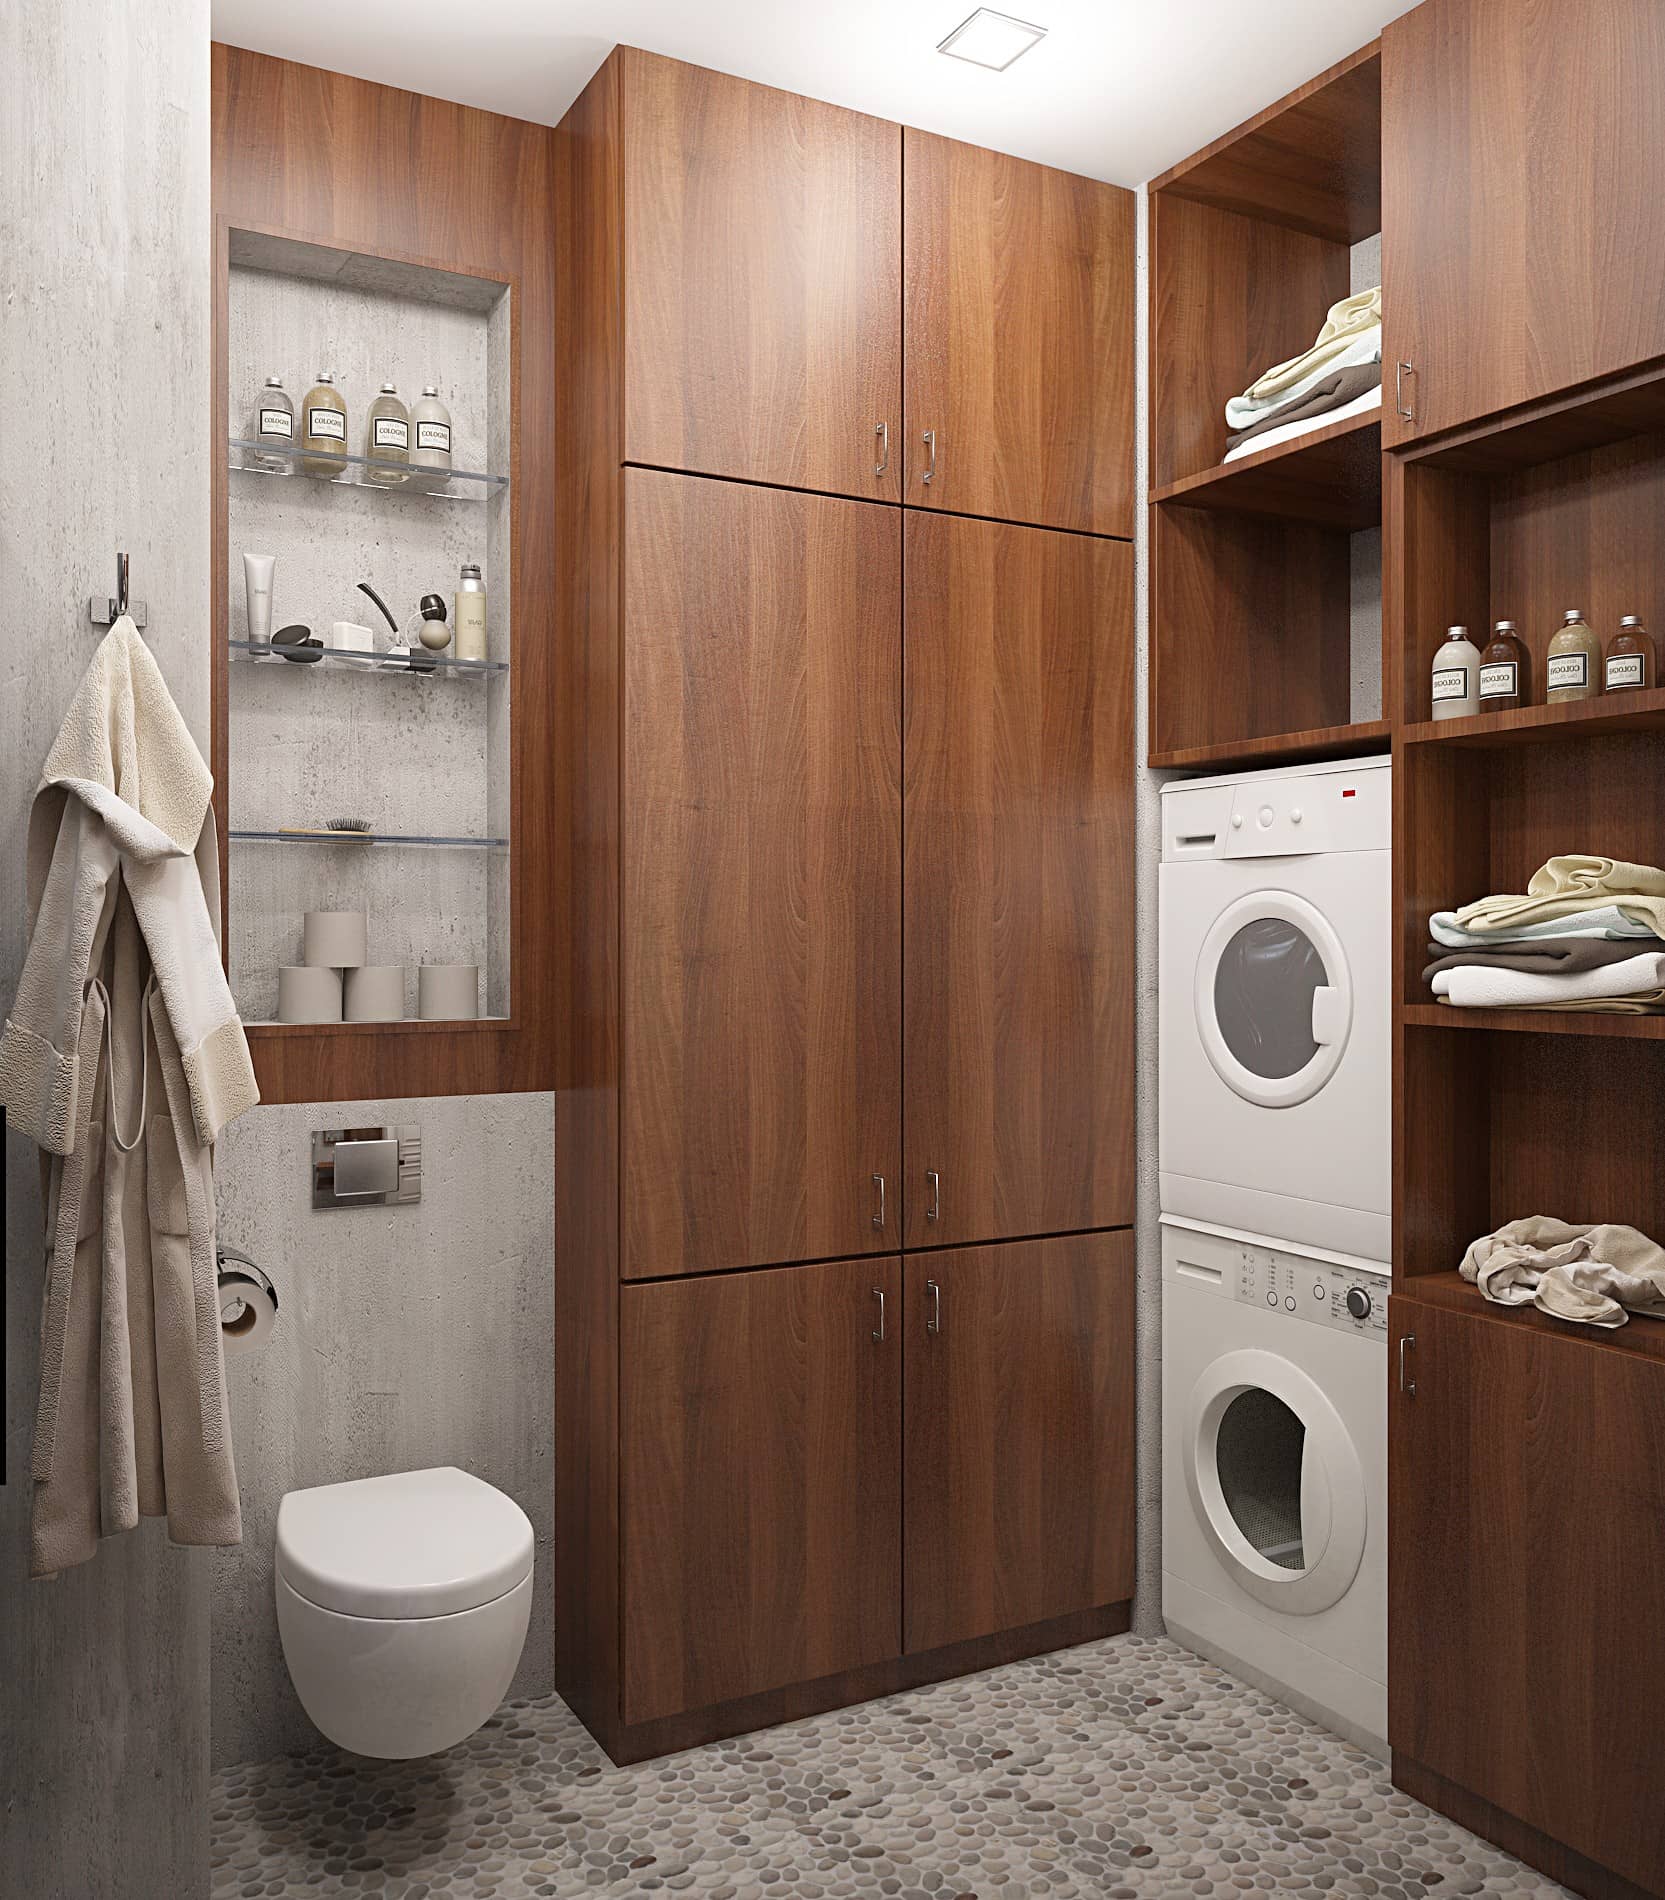 Шкафы в ванной комнате сделаны из орехового дерева